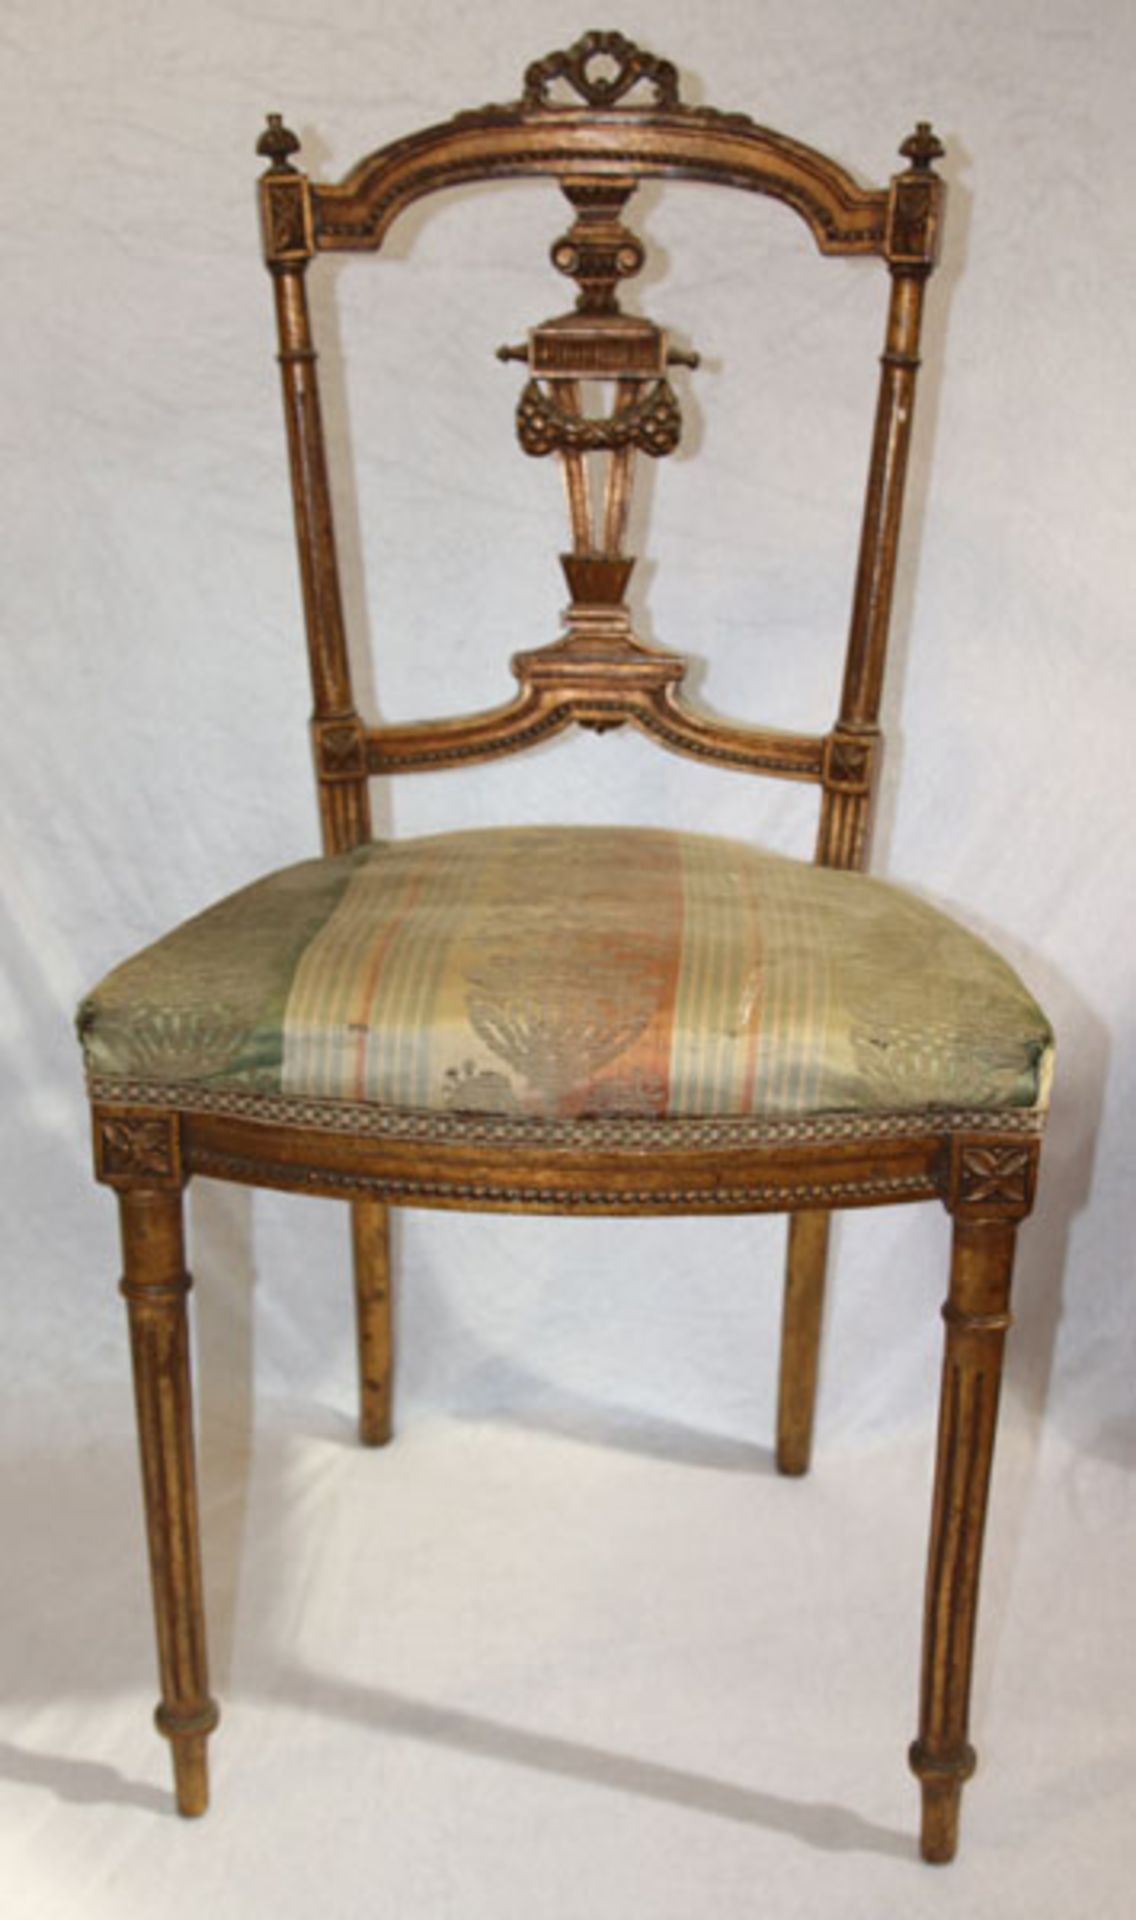 Holzstuhl, Rückenlehne beschnitzt, Sitz gepolstert und bezogen, 19. Jahrhundert, H 86 cm, B 42 cm, T